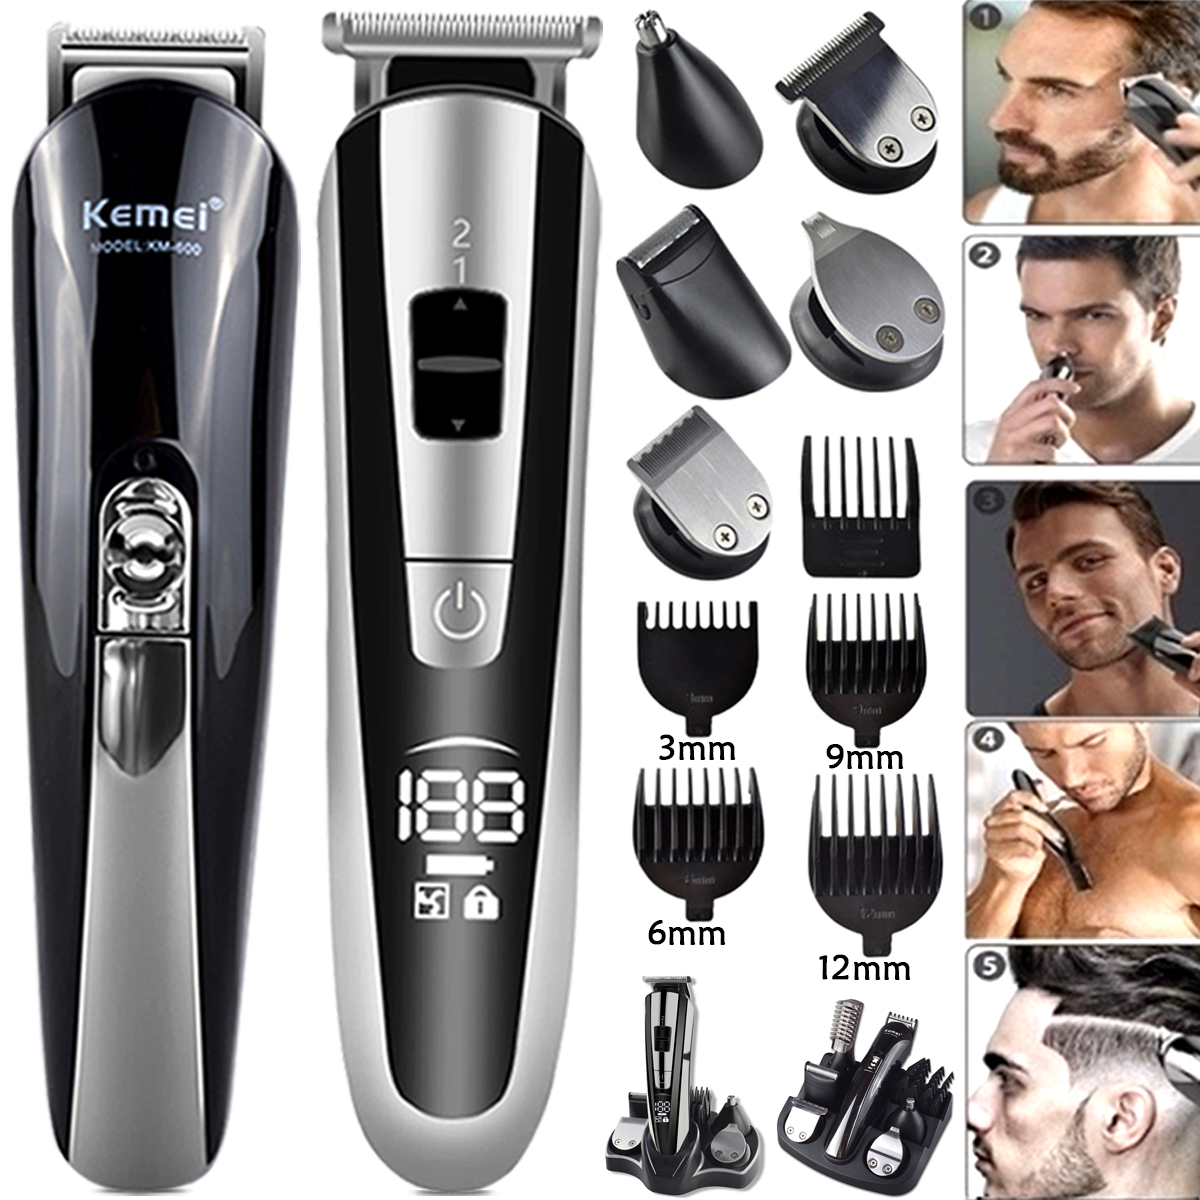 KEMEI-hommes-Machine-raser-Rechargeable-lectrique-tondeuses-cheveux-11-en-1-tondeuse-cheveux-lectrique-tondeuse-barbe